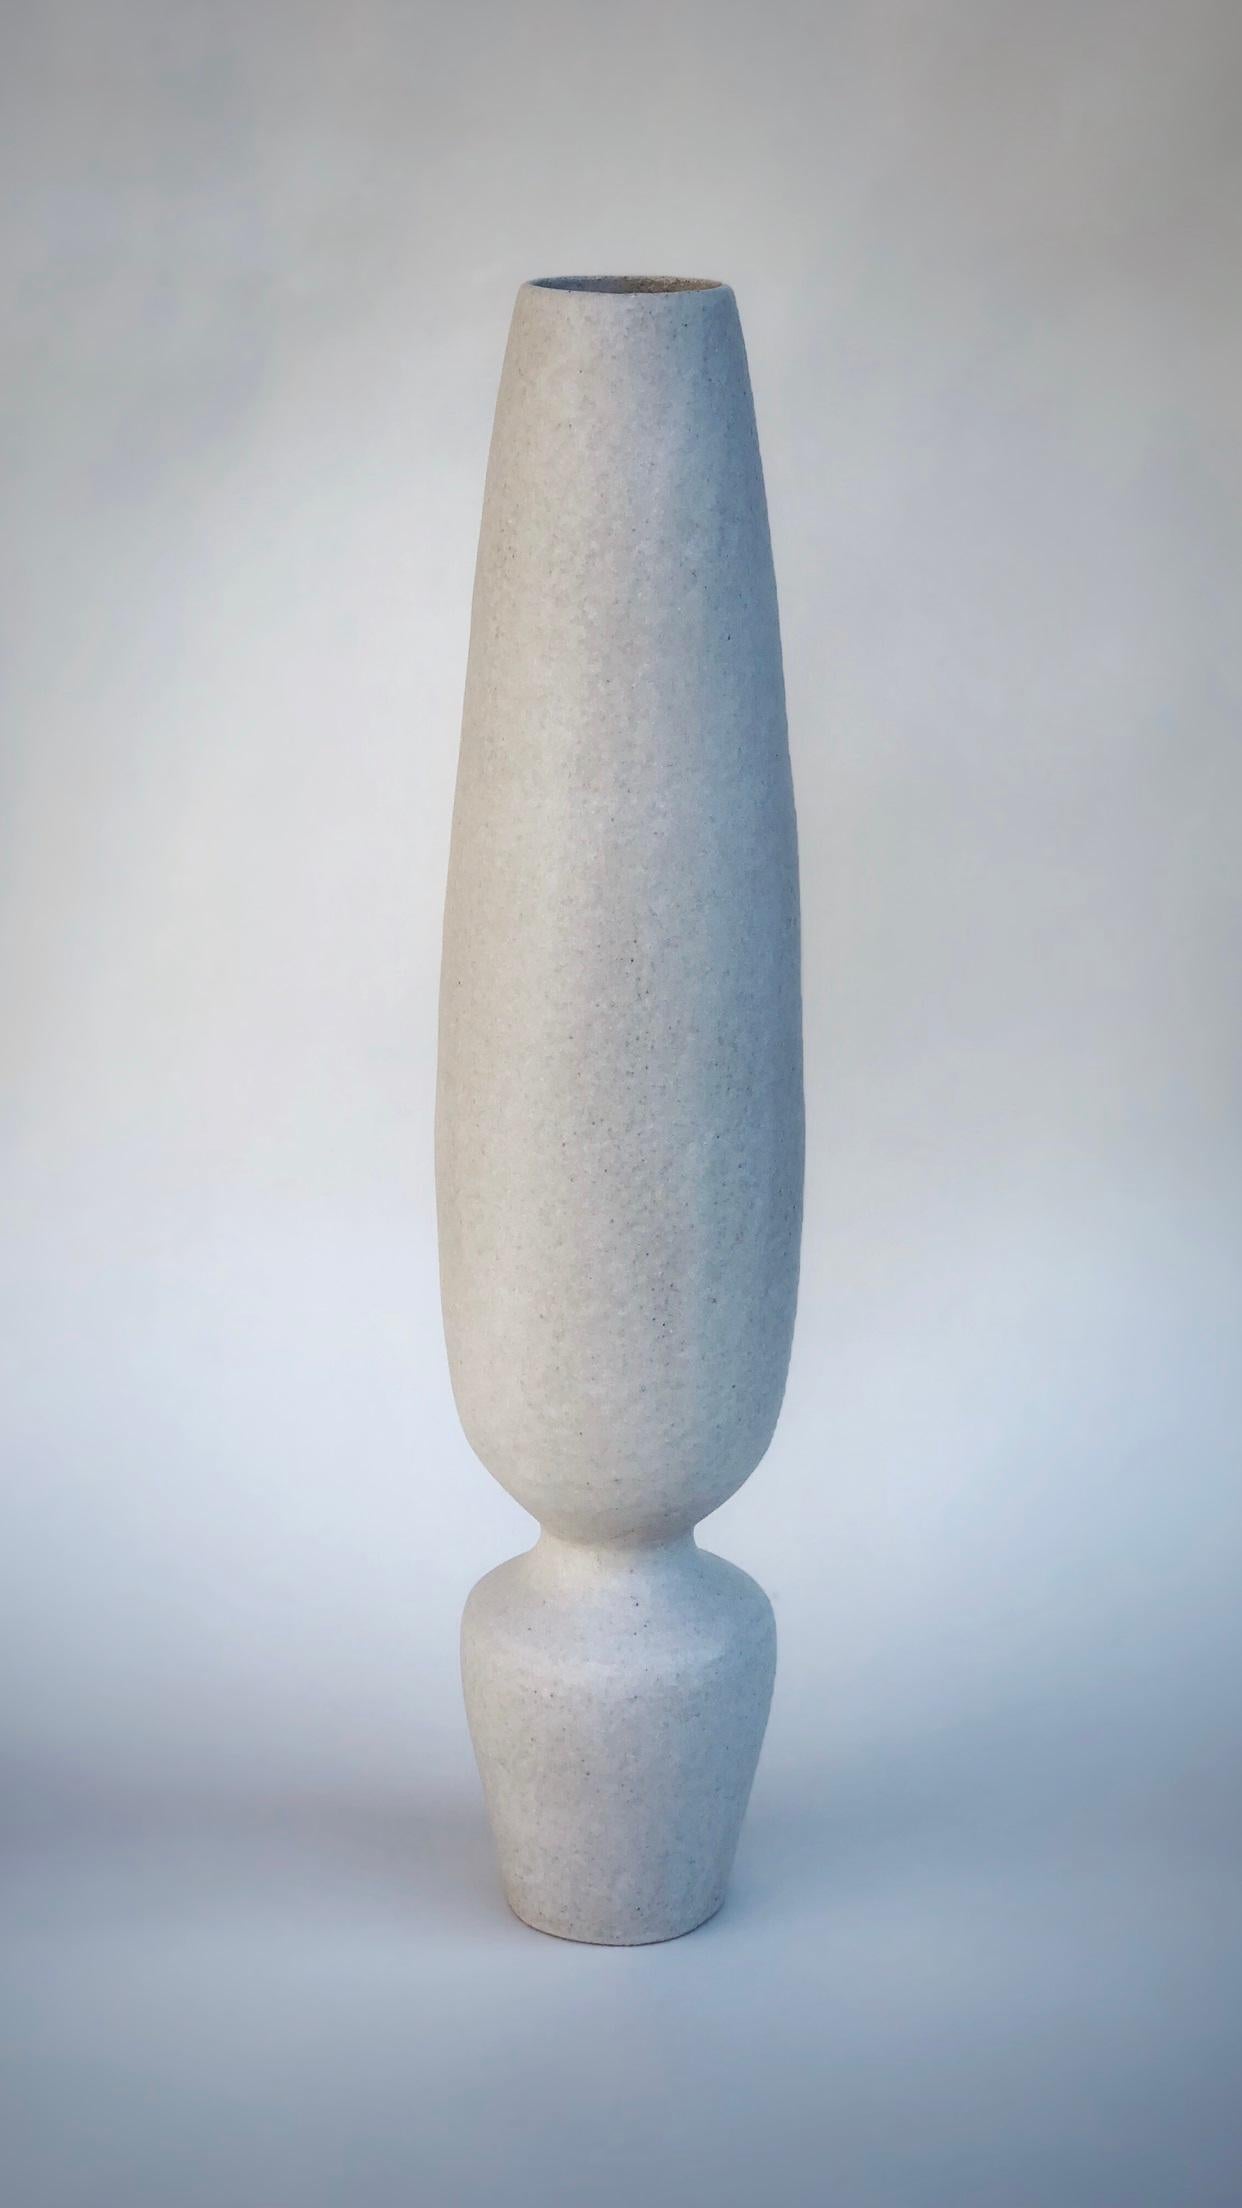 Vase Silhouette par Sophie Vaidie
Unique en son genre.
Dimensions : Ø 11 x H 58 cm : Ø 11 x H 58 cm. 
MATERIAL : Grès beige avec émail blanc mat.

Au début, il y avait un besoin de faire, avec les mains, le toucher, les sens. Puis est venue l'envie